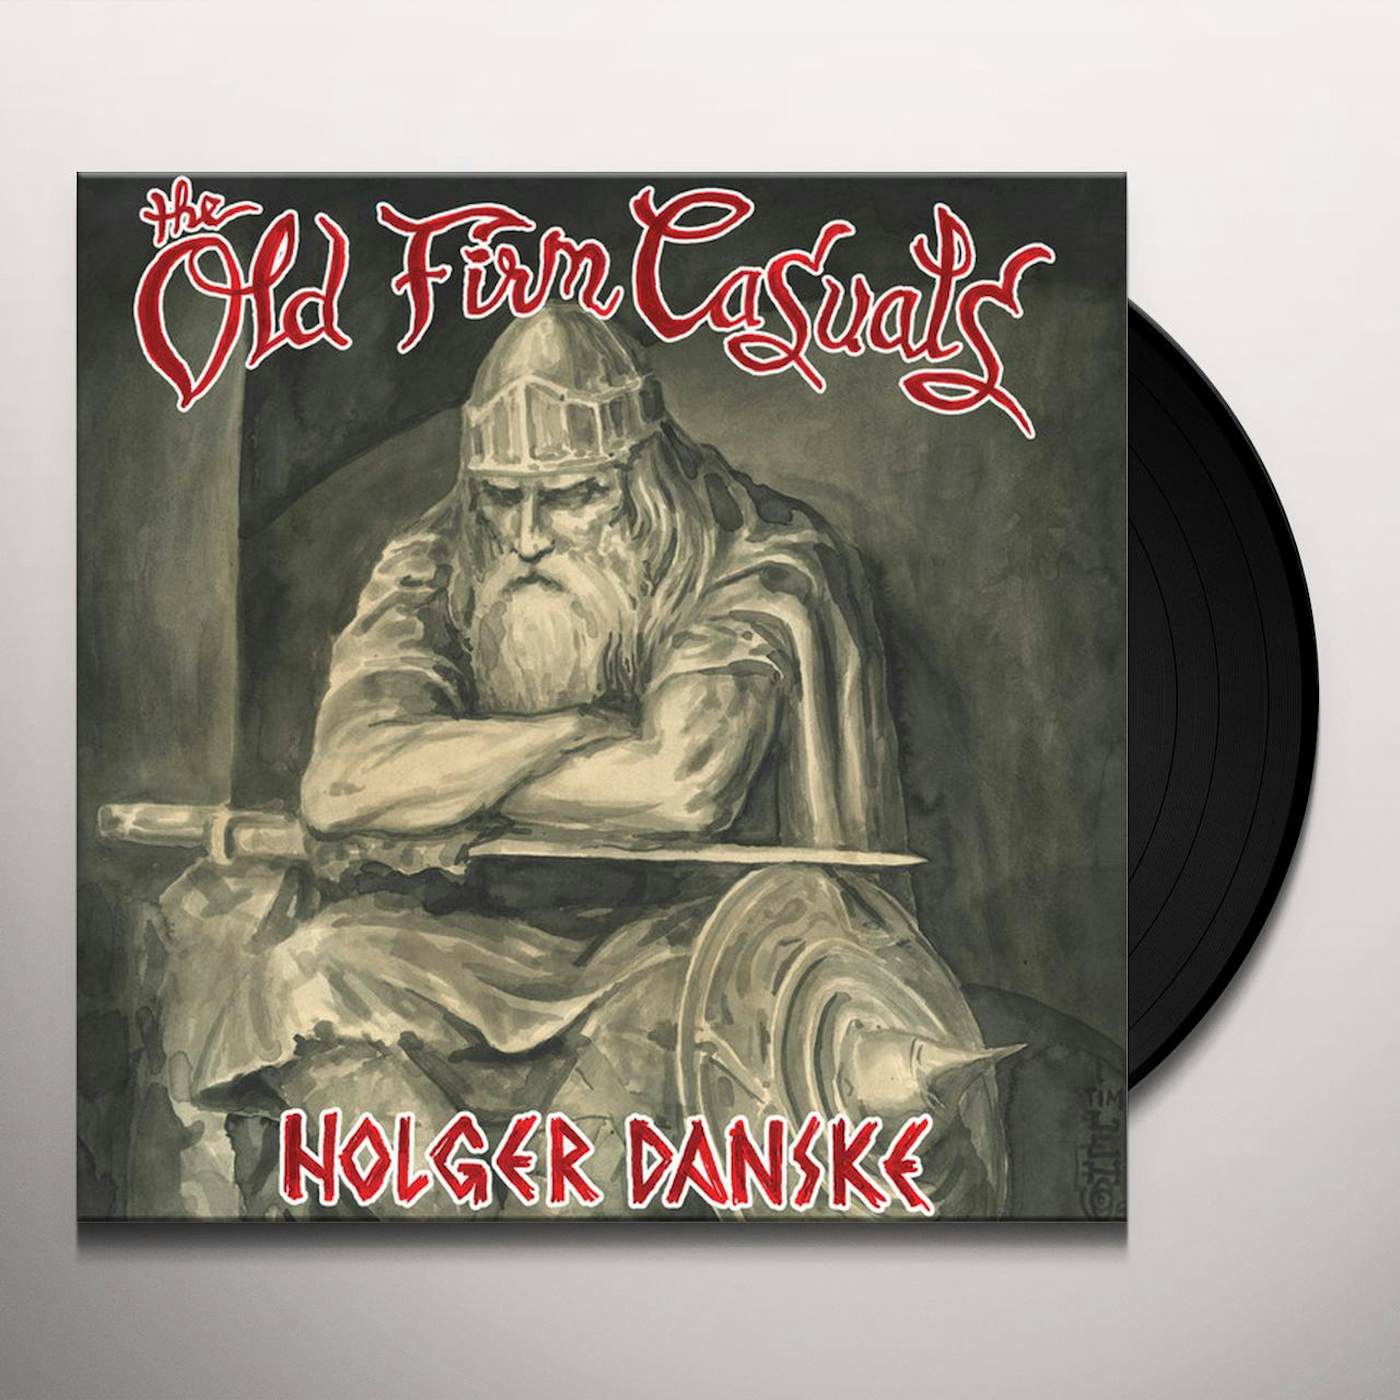 The Old Firm Casuals Holger Danske Vinyl Record